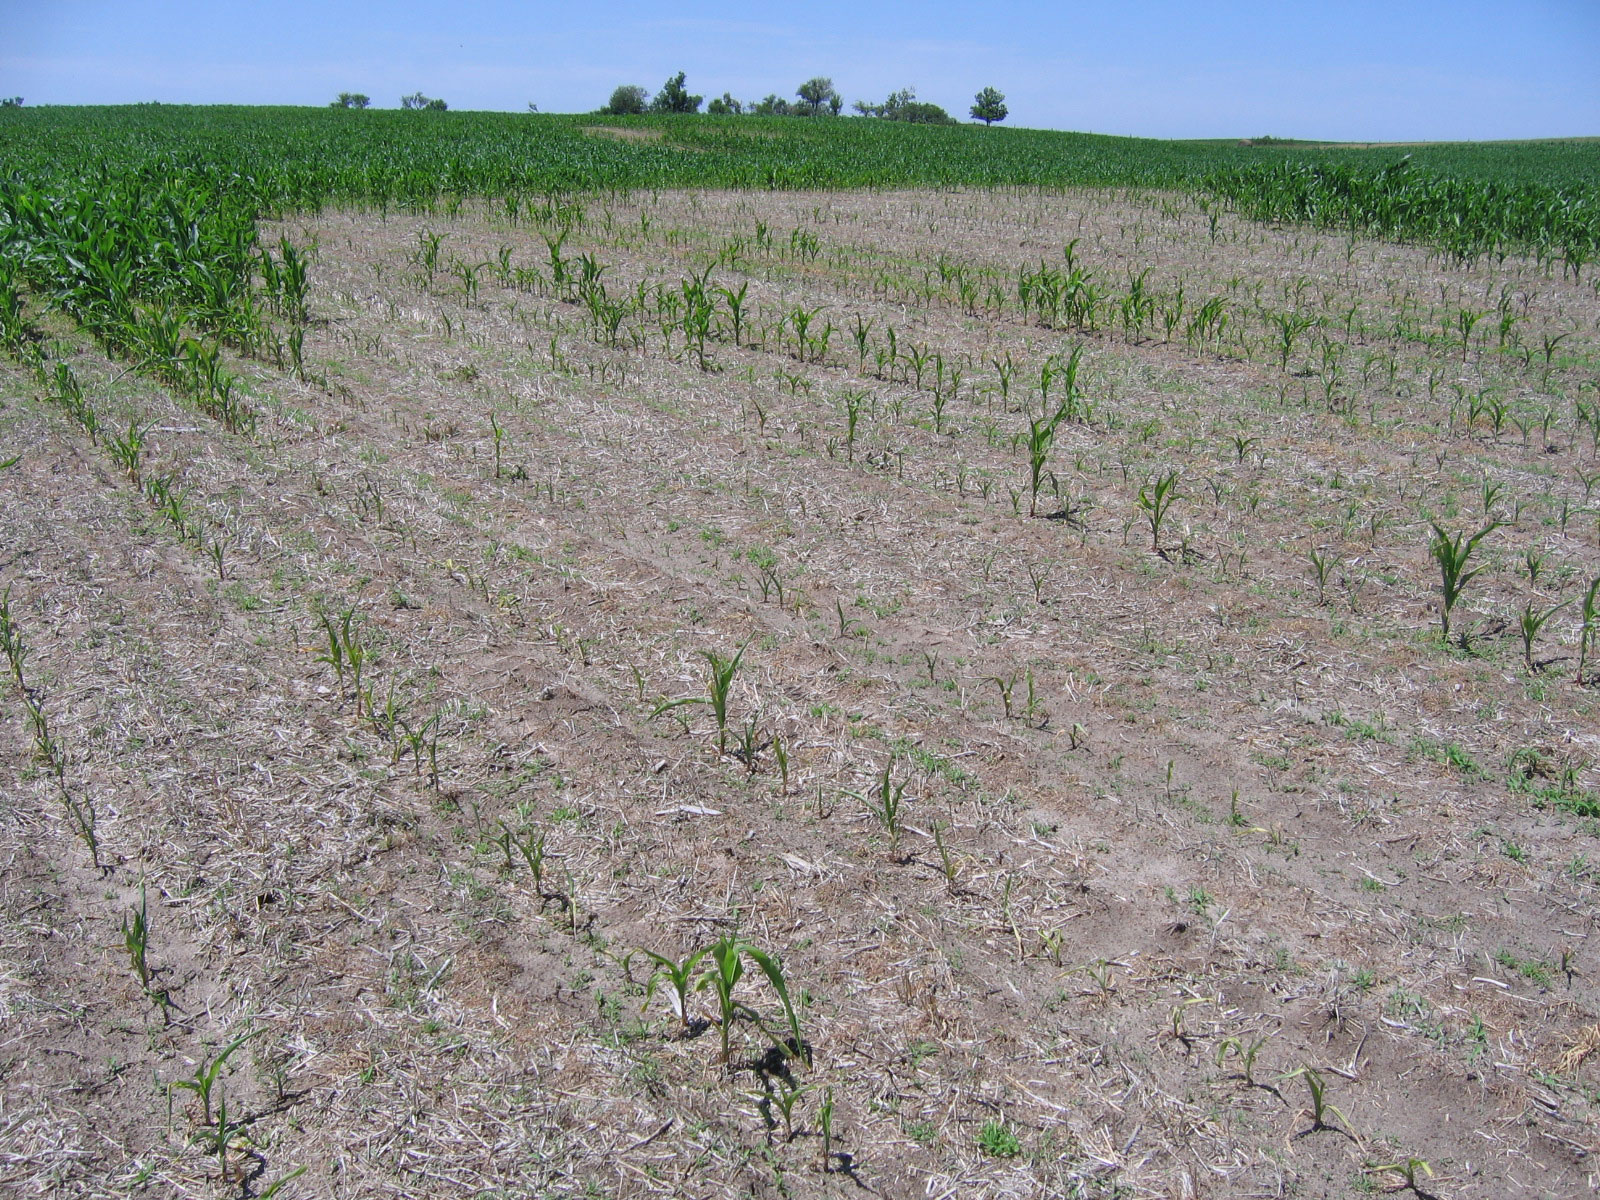  Corn nematode (sting) damage in Nebraska field